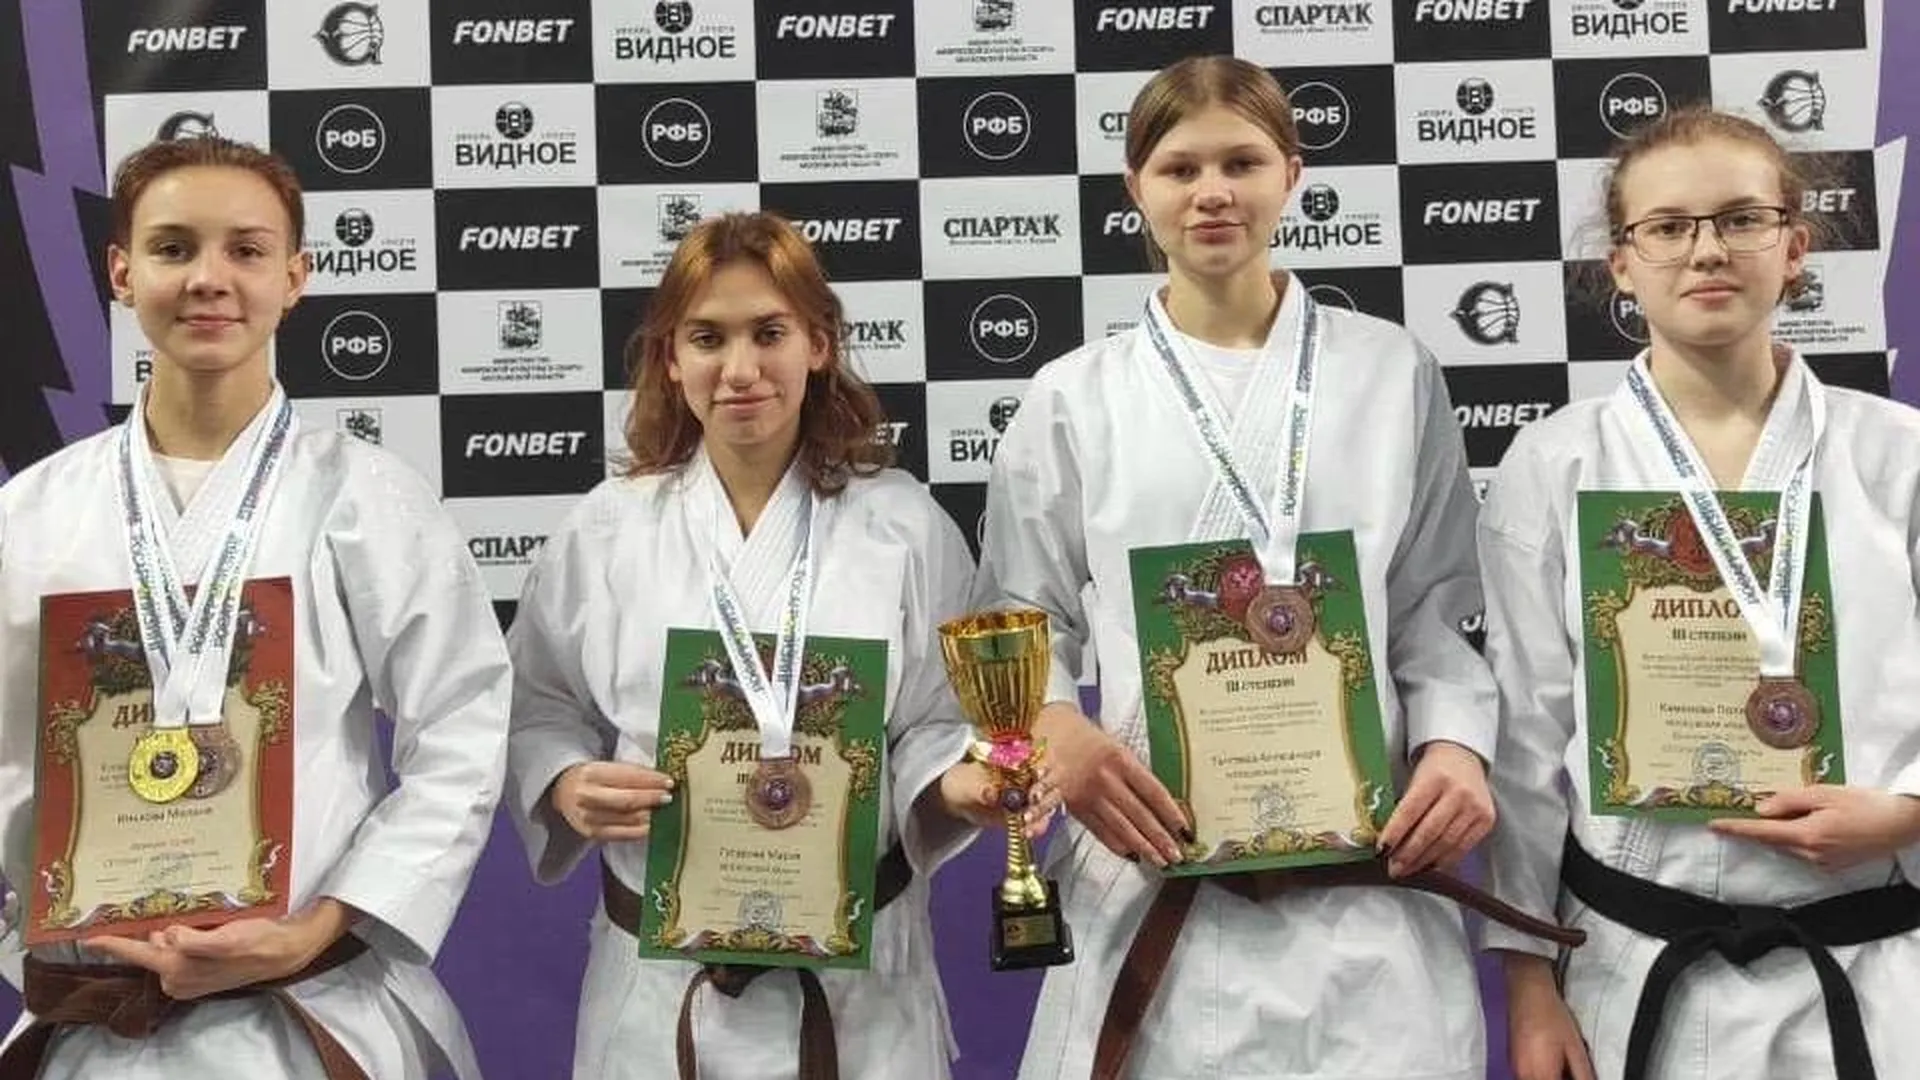 Спортсмены из Люберец заняли 6 призовых мест на Всероссийских соревнованиях